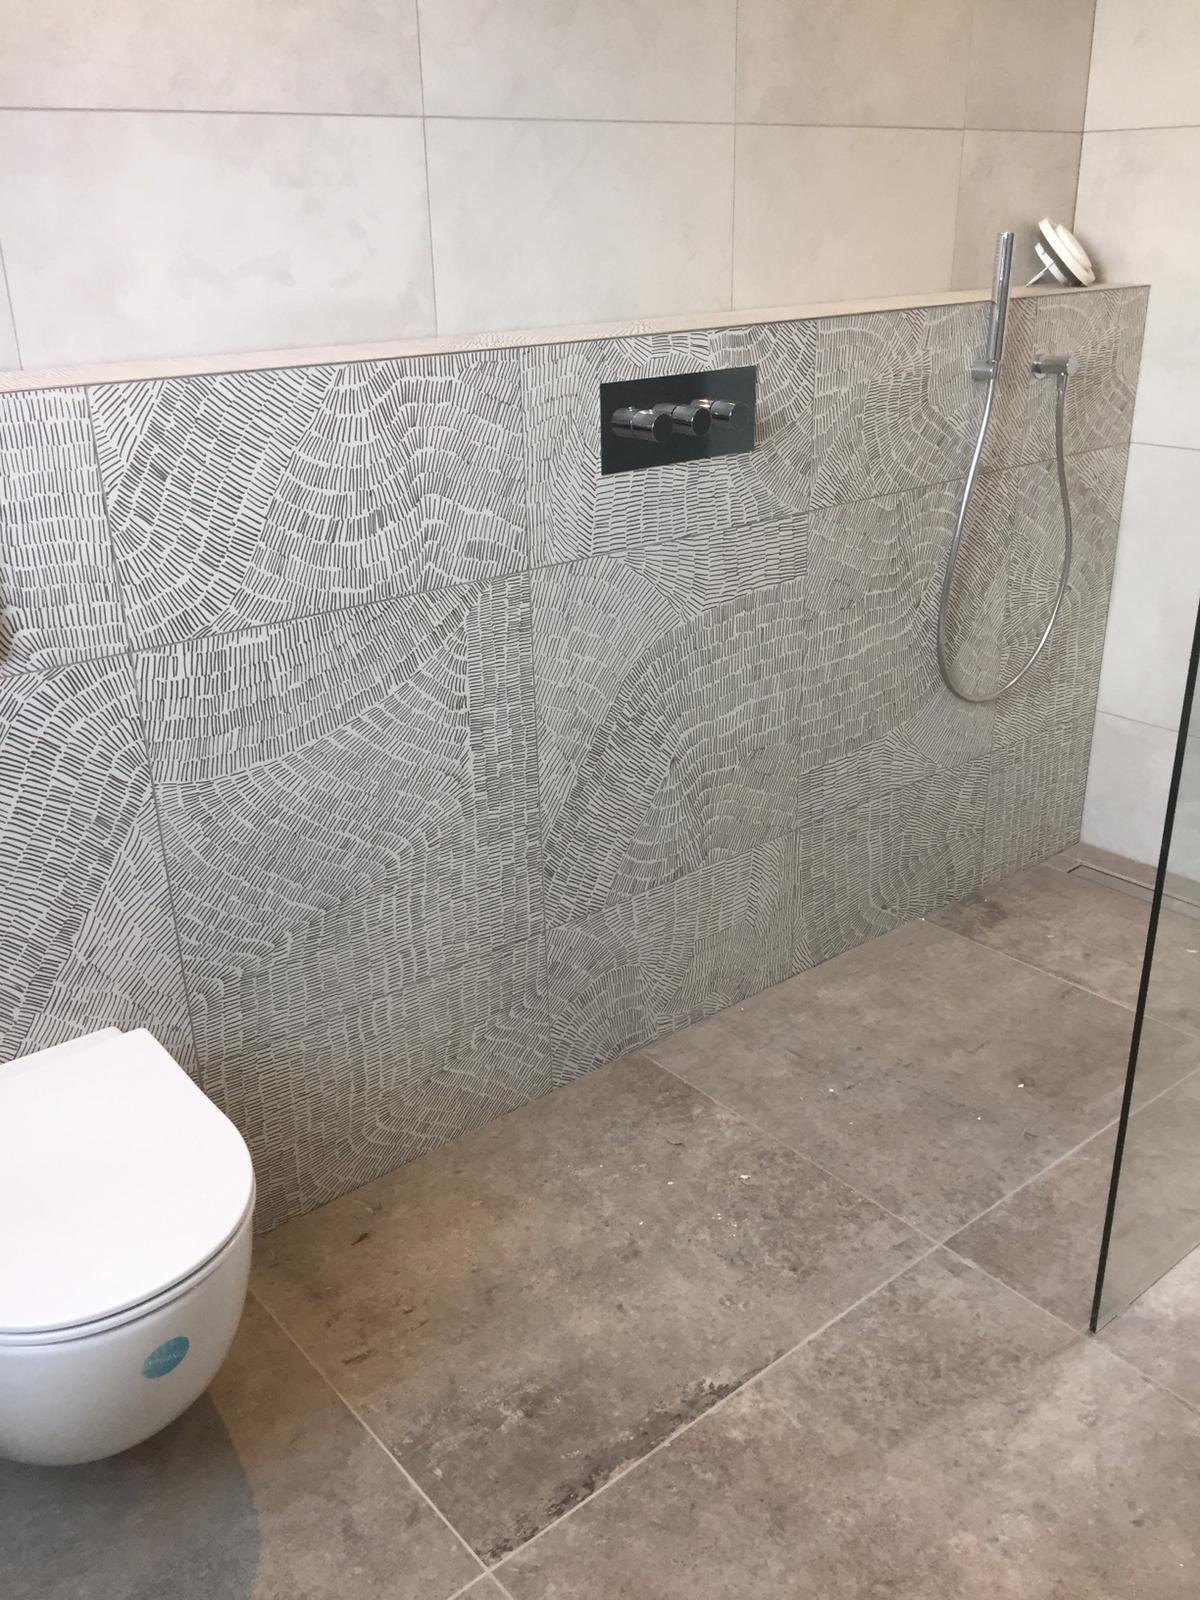 badkamer in aardetinten met o.a. een tegel van een Nederlandse student die een ontwerpwedstrijd heeft gewonnen.